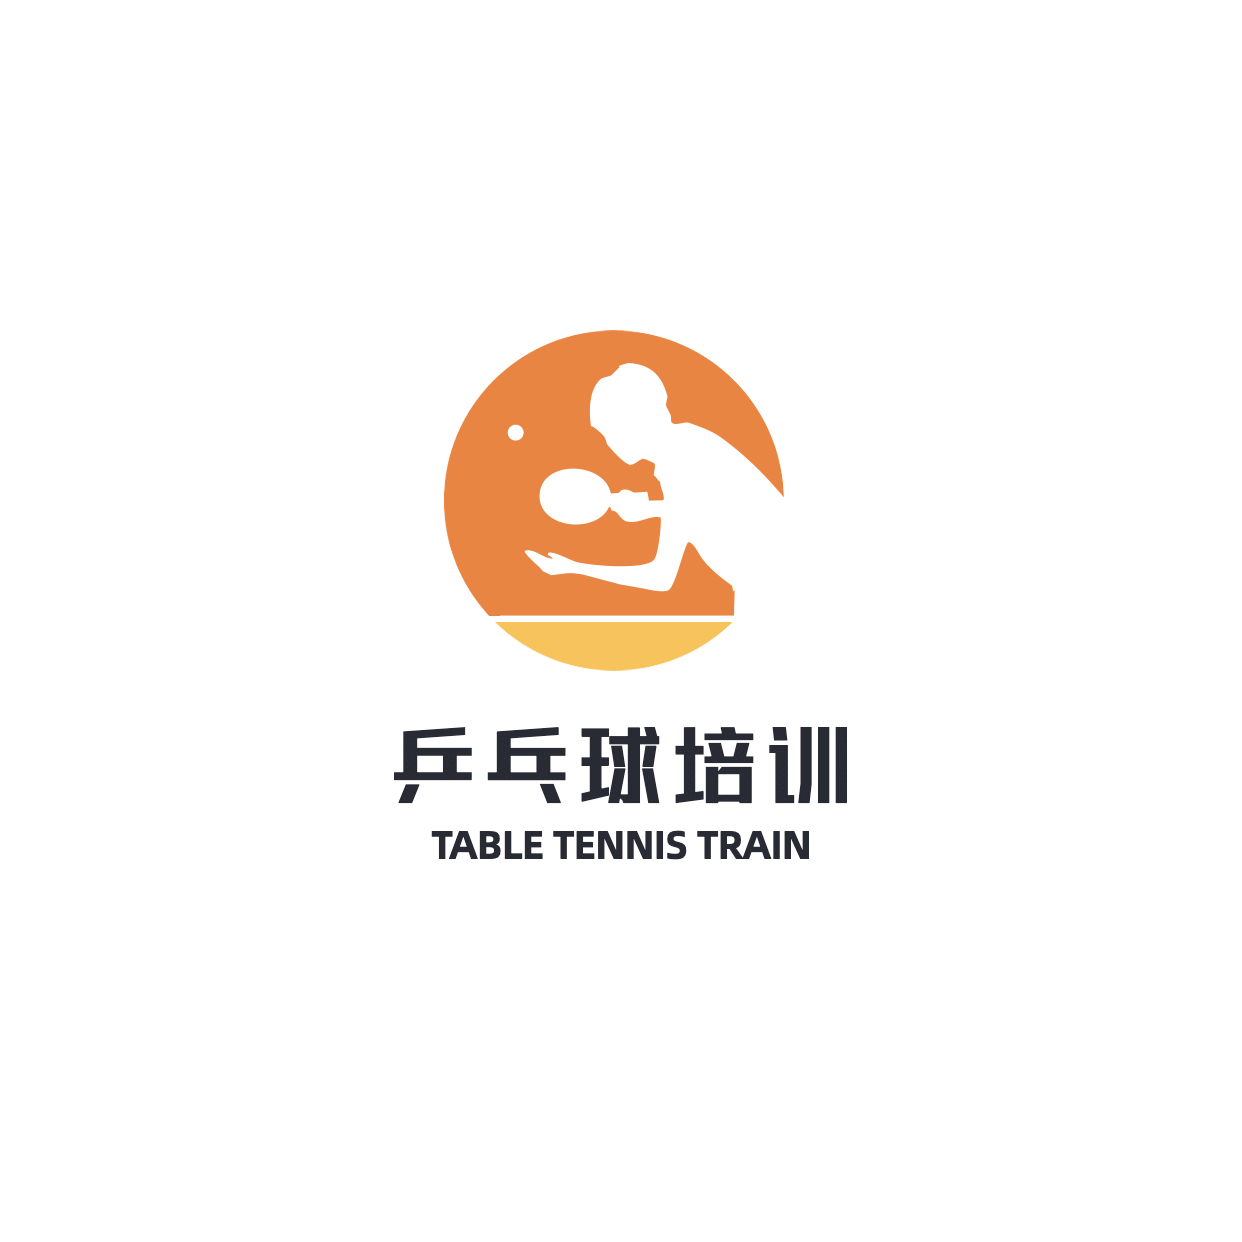 乒乓球教育培训手绘头像logo预览效果